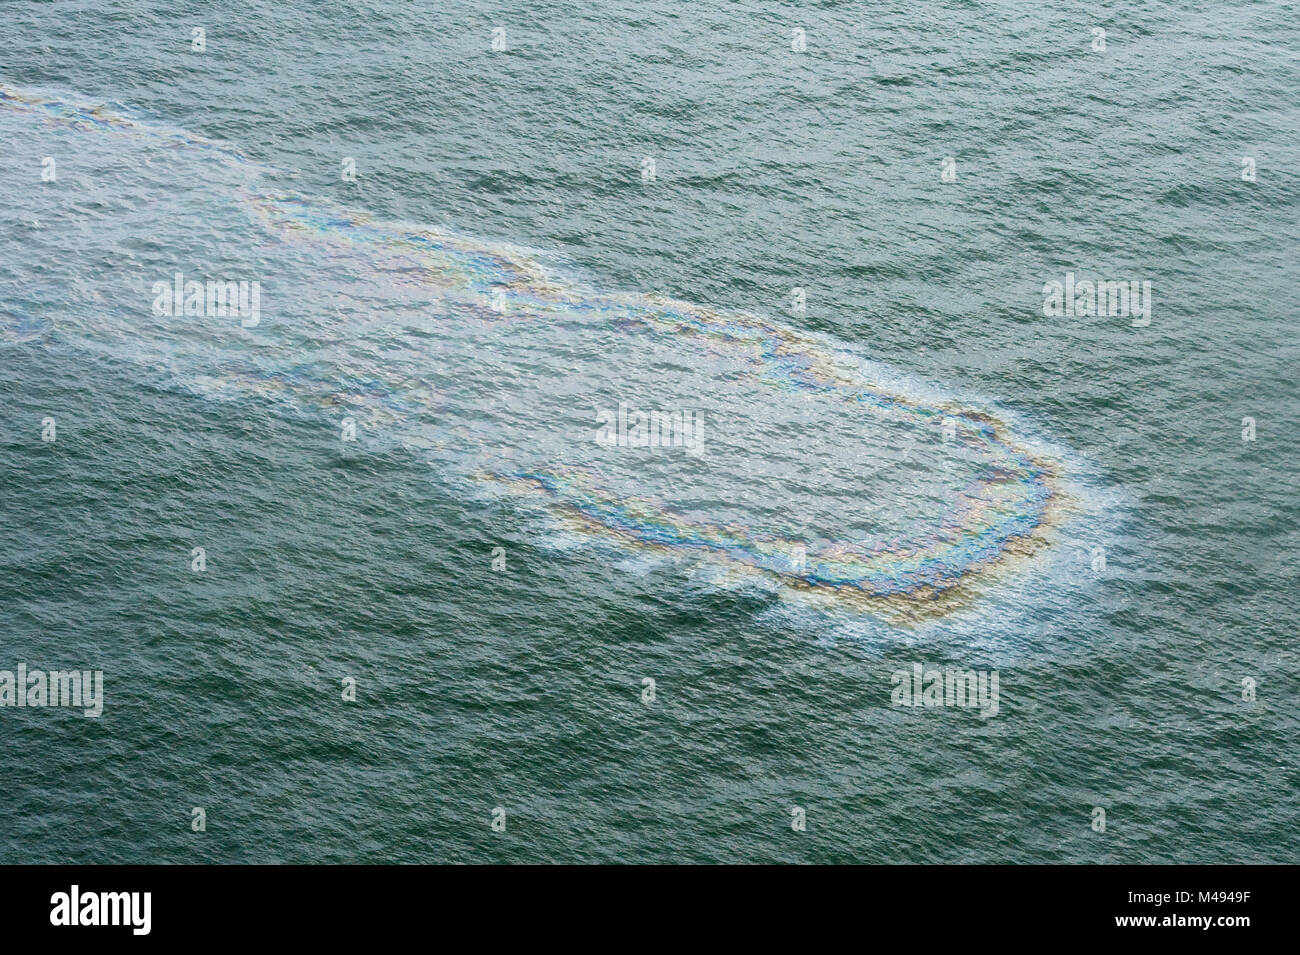 Luftaufnahme von Öl auf der Oberfläche des Meeres während der Deepwater Horizon Oil Spill, Louisiana, Golf von Mexiko, USA, August 2010 Stockfoto